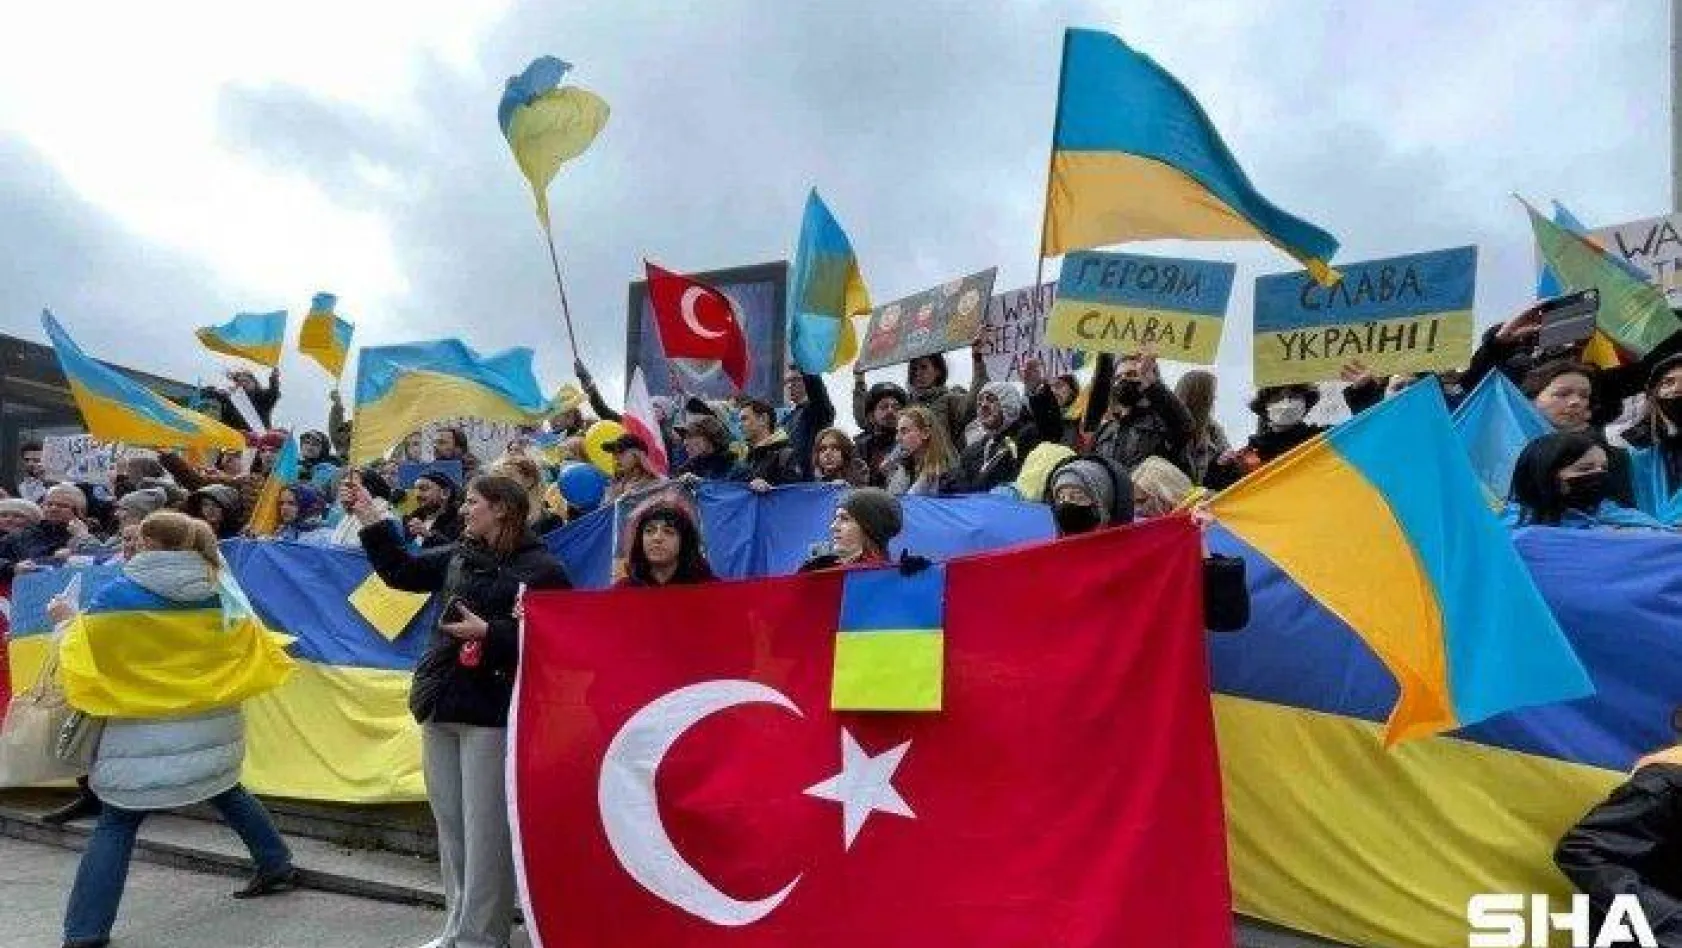 Beyoğlu'nda Ukraynalıların Rusya'yı protestoları devam ediyor